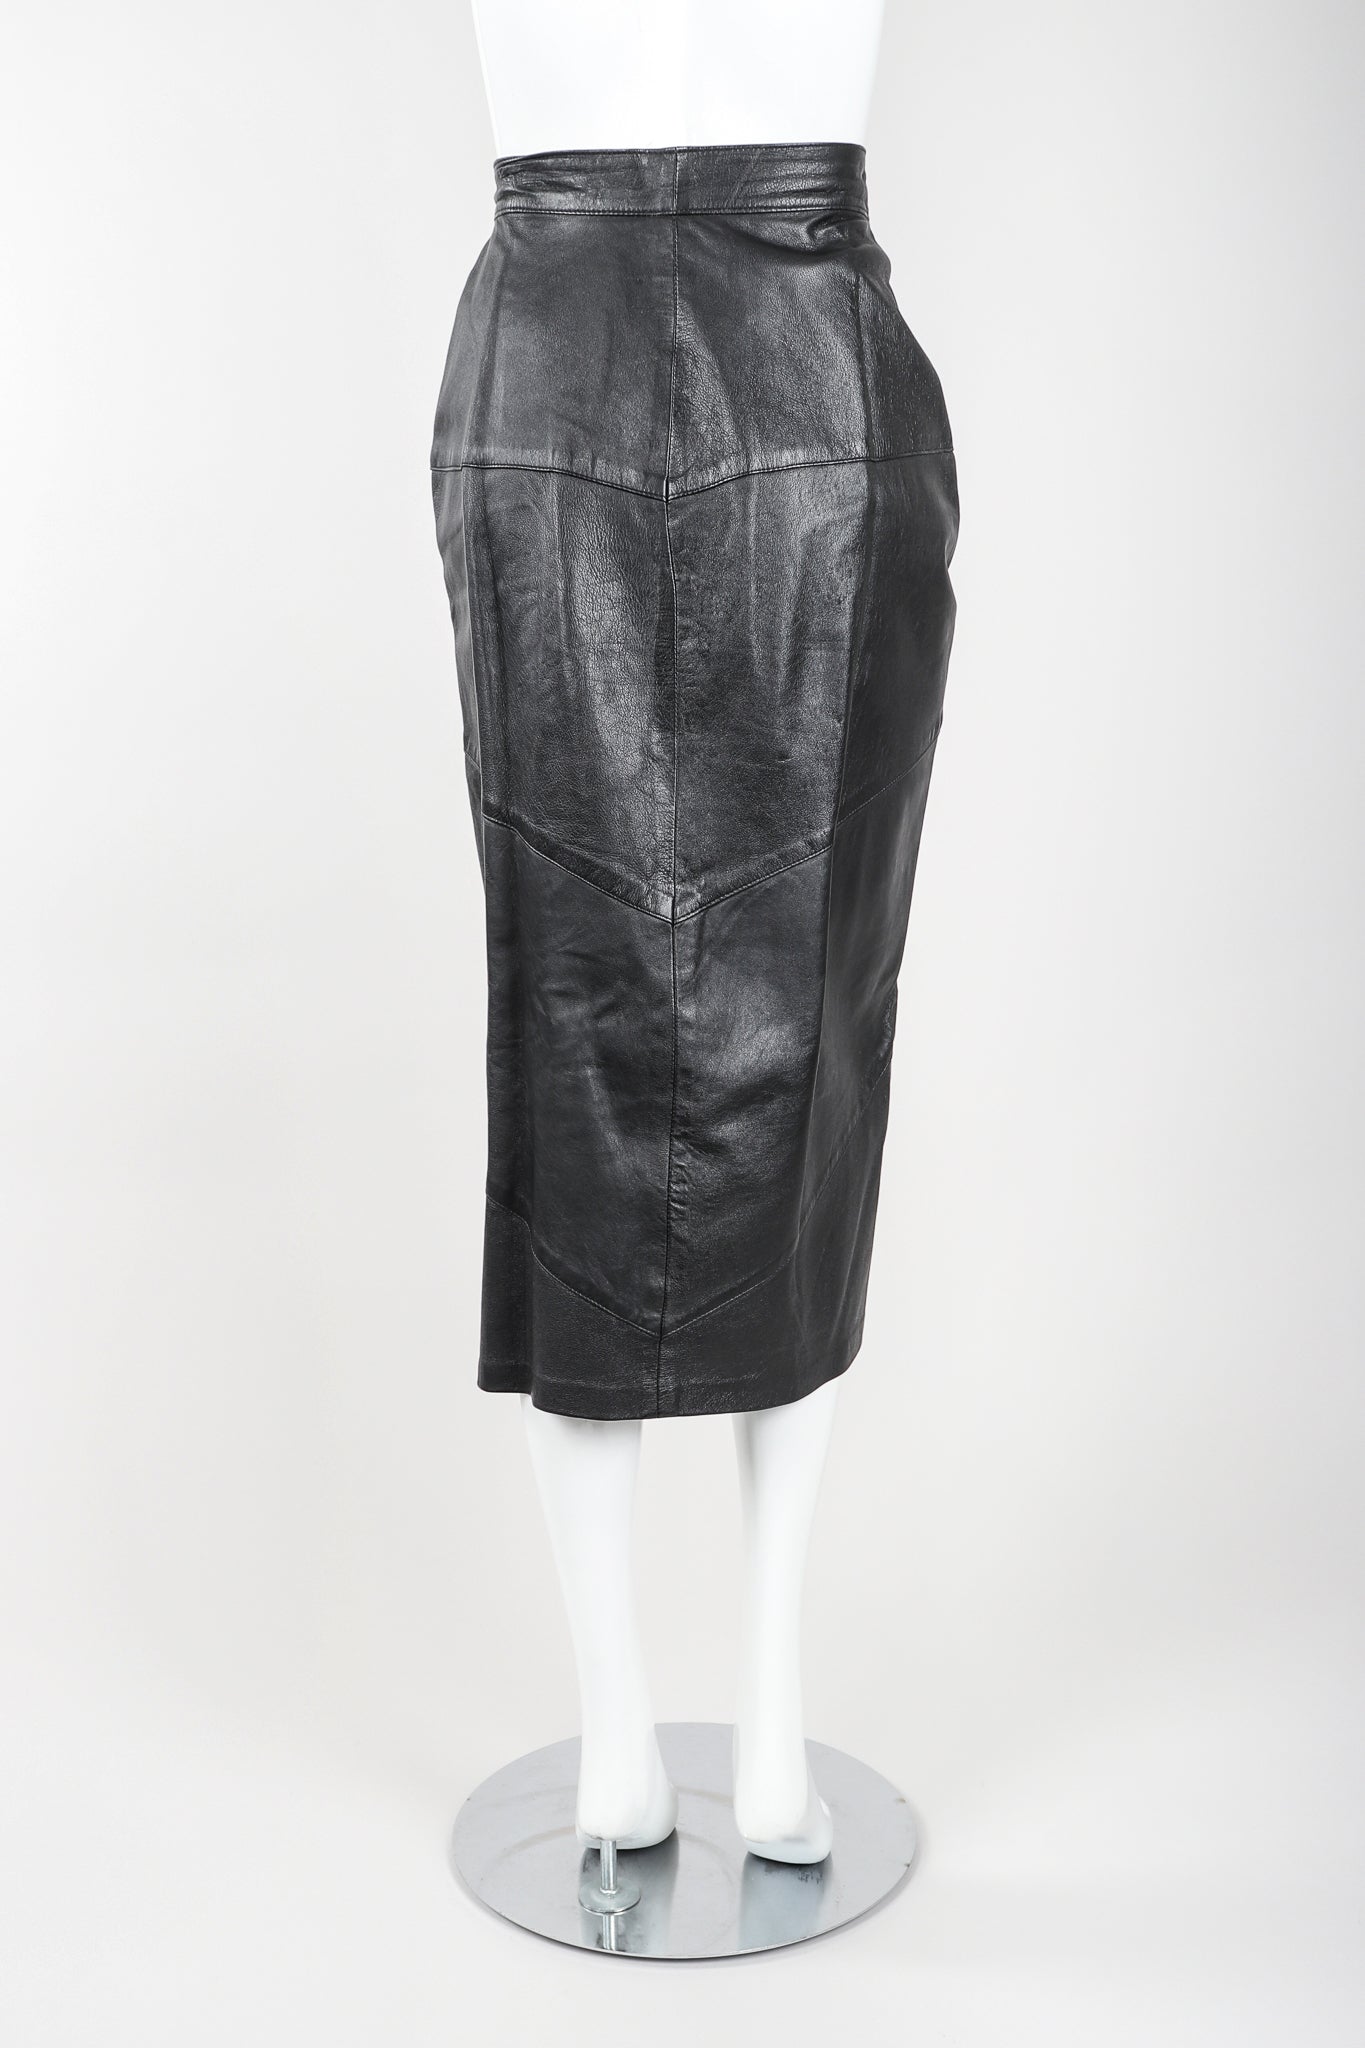  Dero Enterprises Black Leather Skirt On Mannequin, back, at Recess Vintage